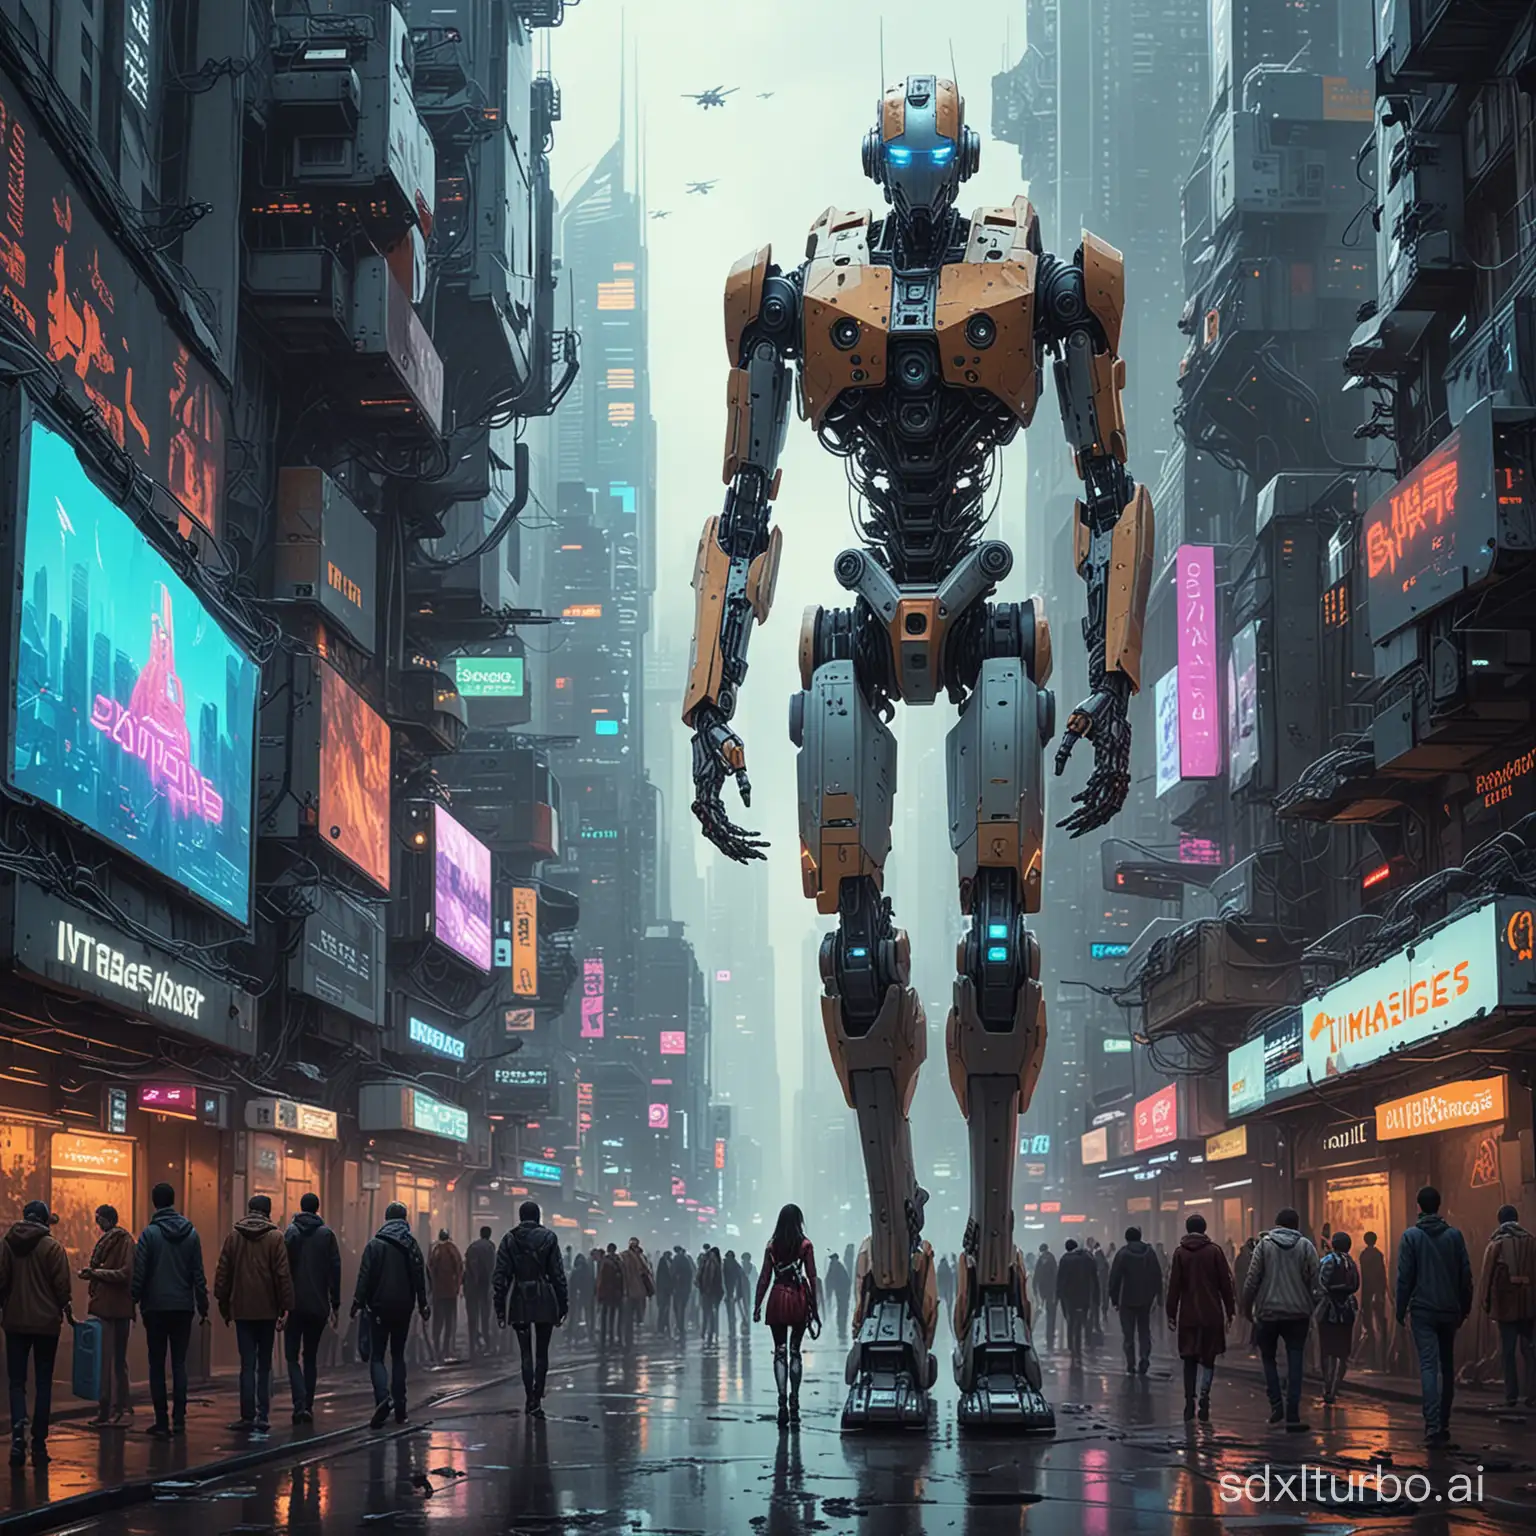 在这幅赛博朋克风格的画作中，我们可以看到一个充满科技感的未来城市。高耸的摩天大楼和闪烁的霓虹灯构成了这个城市的基本轮廓。天空中，无人机和飞行器穿梭其中，形成了一幅繁忙的交通画面。

在画面的中心，我们可以看到一群机器人和人类和谐共处。机器人的外形各异，有的像人类一样拥有四肢和躯干，有的则是各种奇形怪状的设计。他们与人类一起工作、生活，彼此之间没有明显的界限。

在街道上，人们穿着时尚的赛博朋克风格服装，与机器人并肩行走。一些人戴着虚拟现实眼镜，沉浸在虚拟世界中；另一些人则与机器人互动，共同完成任务。在这里，人类和机器人之间的关系不再是对立和排斥，而是相互依赖和共生。

在画面的一角，有一家机器人维修店。店内，机器人和人类技师共同工作，修复和升级机器人。这表明在这个世界中，机器人已经成为了人类生活中不可或缺的一部分，人们已经习惯了与机器人共同生活。

在远处的天空中，一座巨大的广告牌上显示着“机器人与人类共存”的字样，强调了这个主题。整个画面充满了未来科技的氛围，展现了一个和谐共处的机器人与人类世界。

总的来说，这幅赛博朋克风格的画作展示了一个充满科技感的未来世界，机器人与人类和谐共处，共同创造美好的生活。